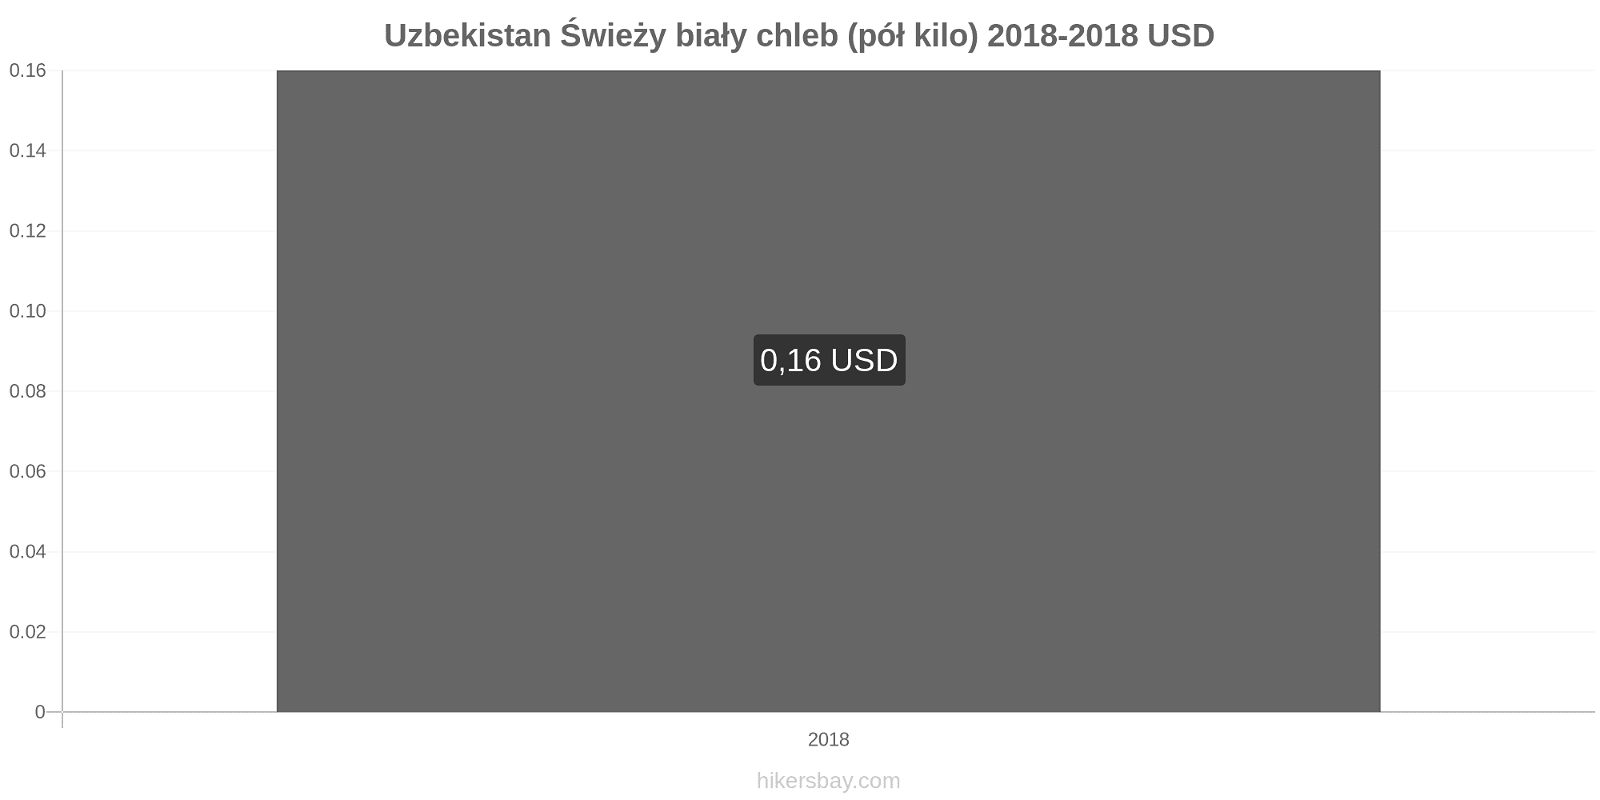 Uzbekistan zmiany cen Chleb pół kilo hikersbay.com